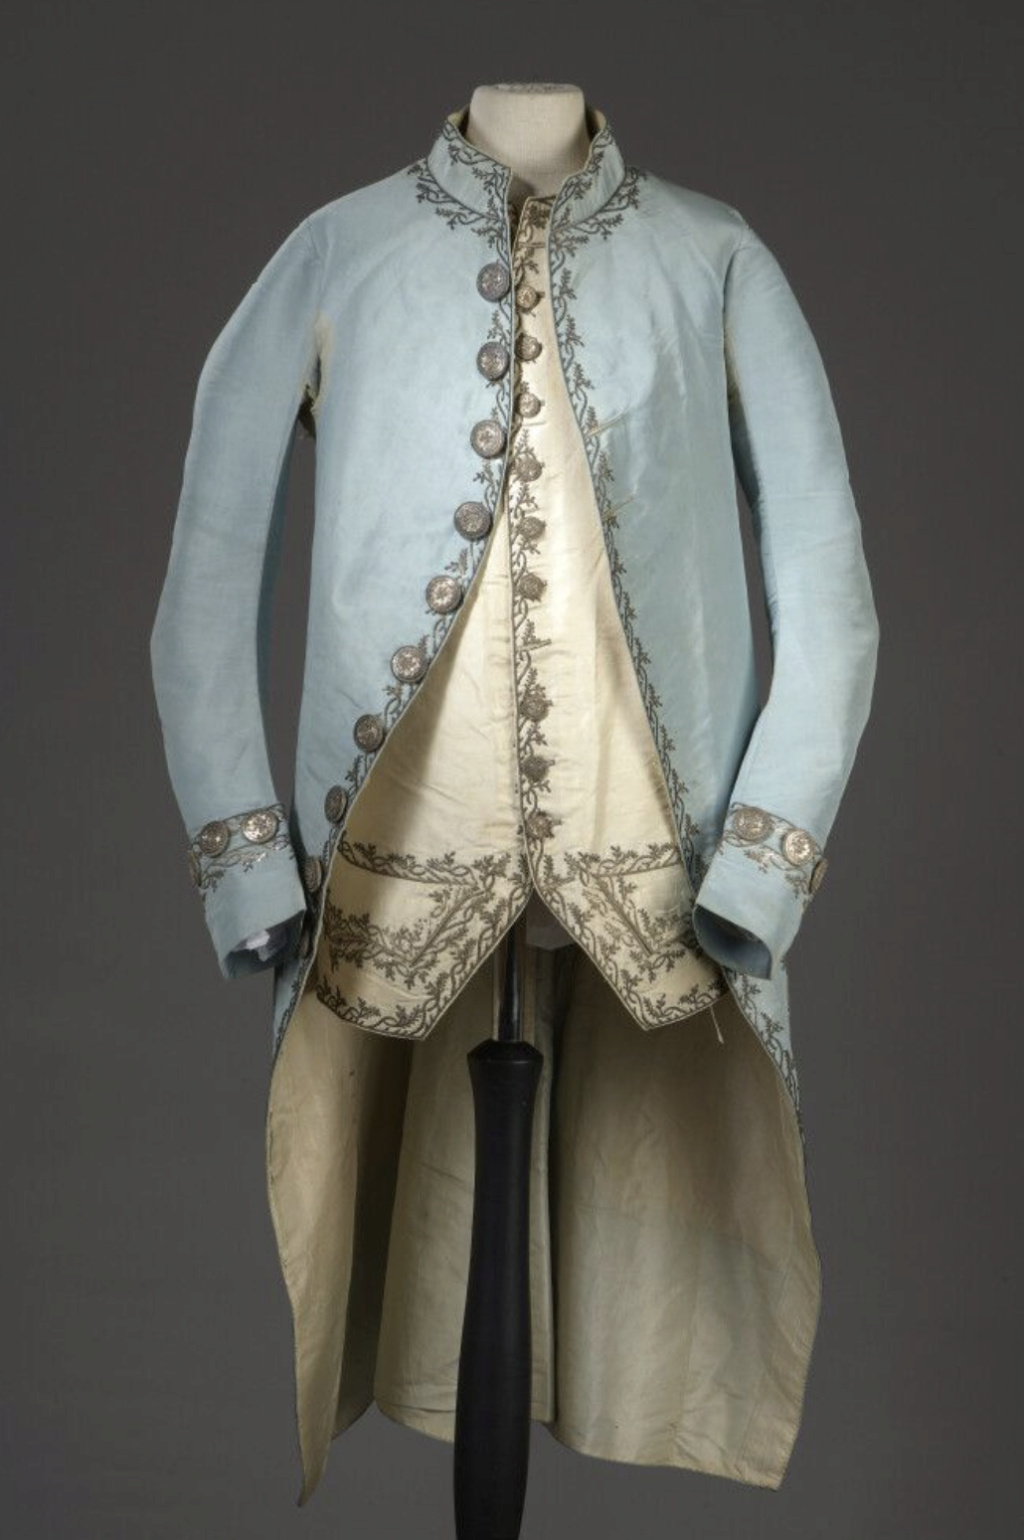 La mode et les habits masculins au XVIIIe siècle - Page 4 Capt3269